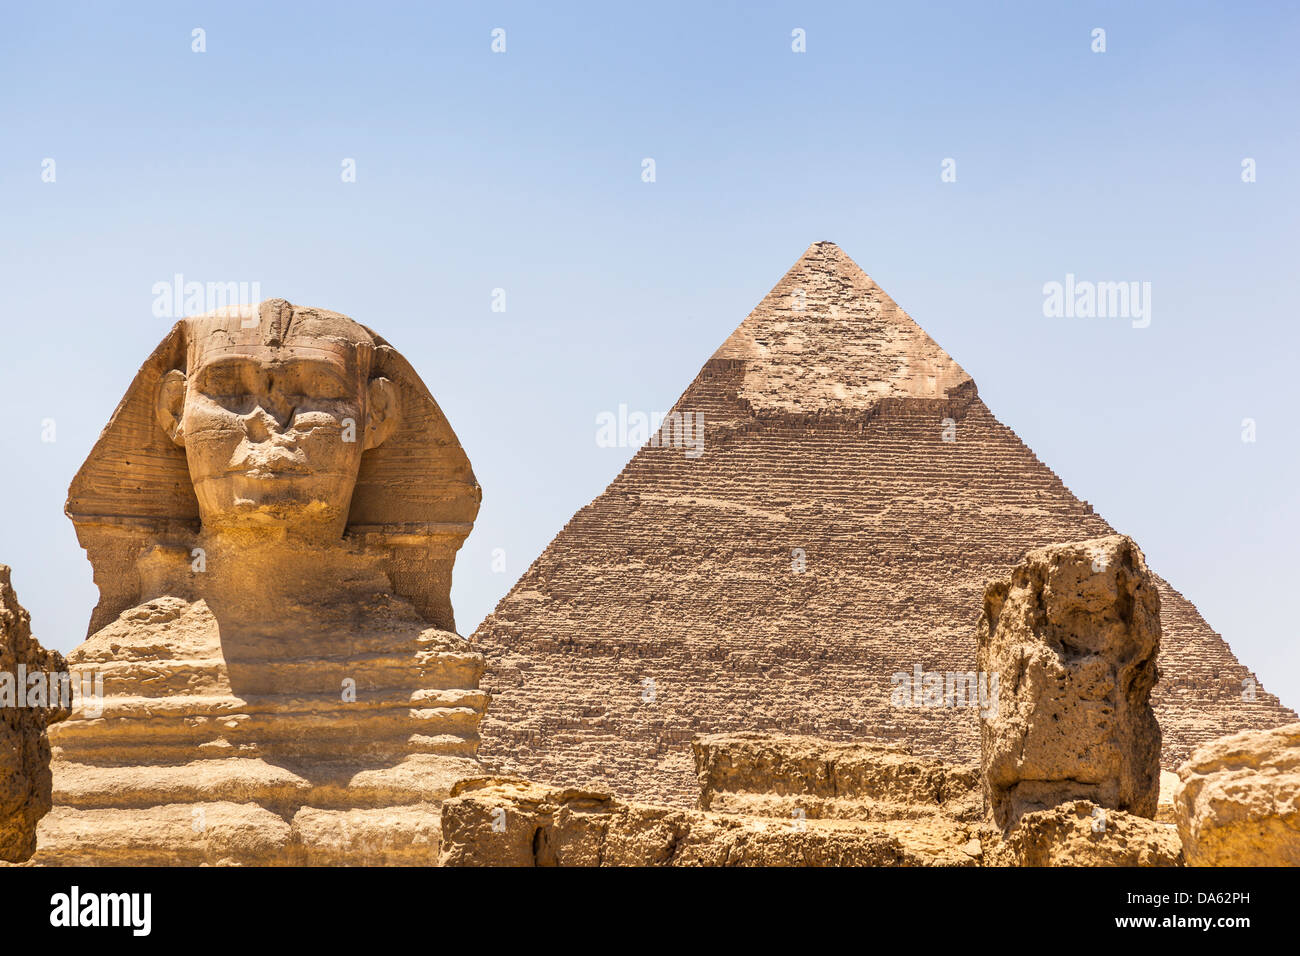 Le grand Sphinx et pyramide de Khafré, également connu sous le nom de pyramide de Khéphren, Giza, Le Caire, Egypte Banque D'Images